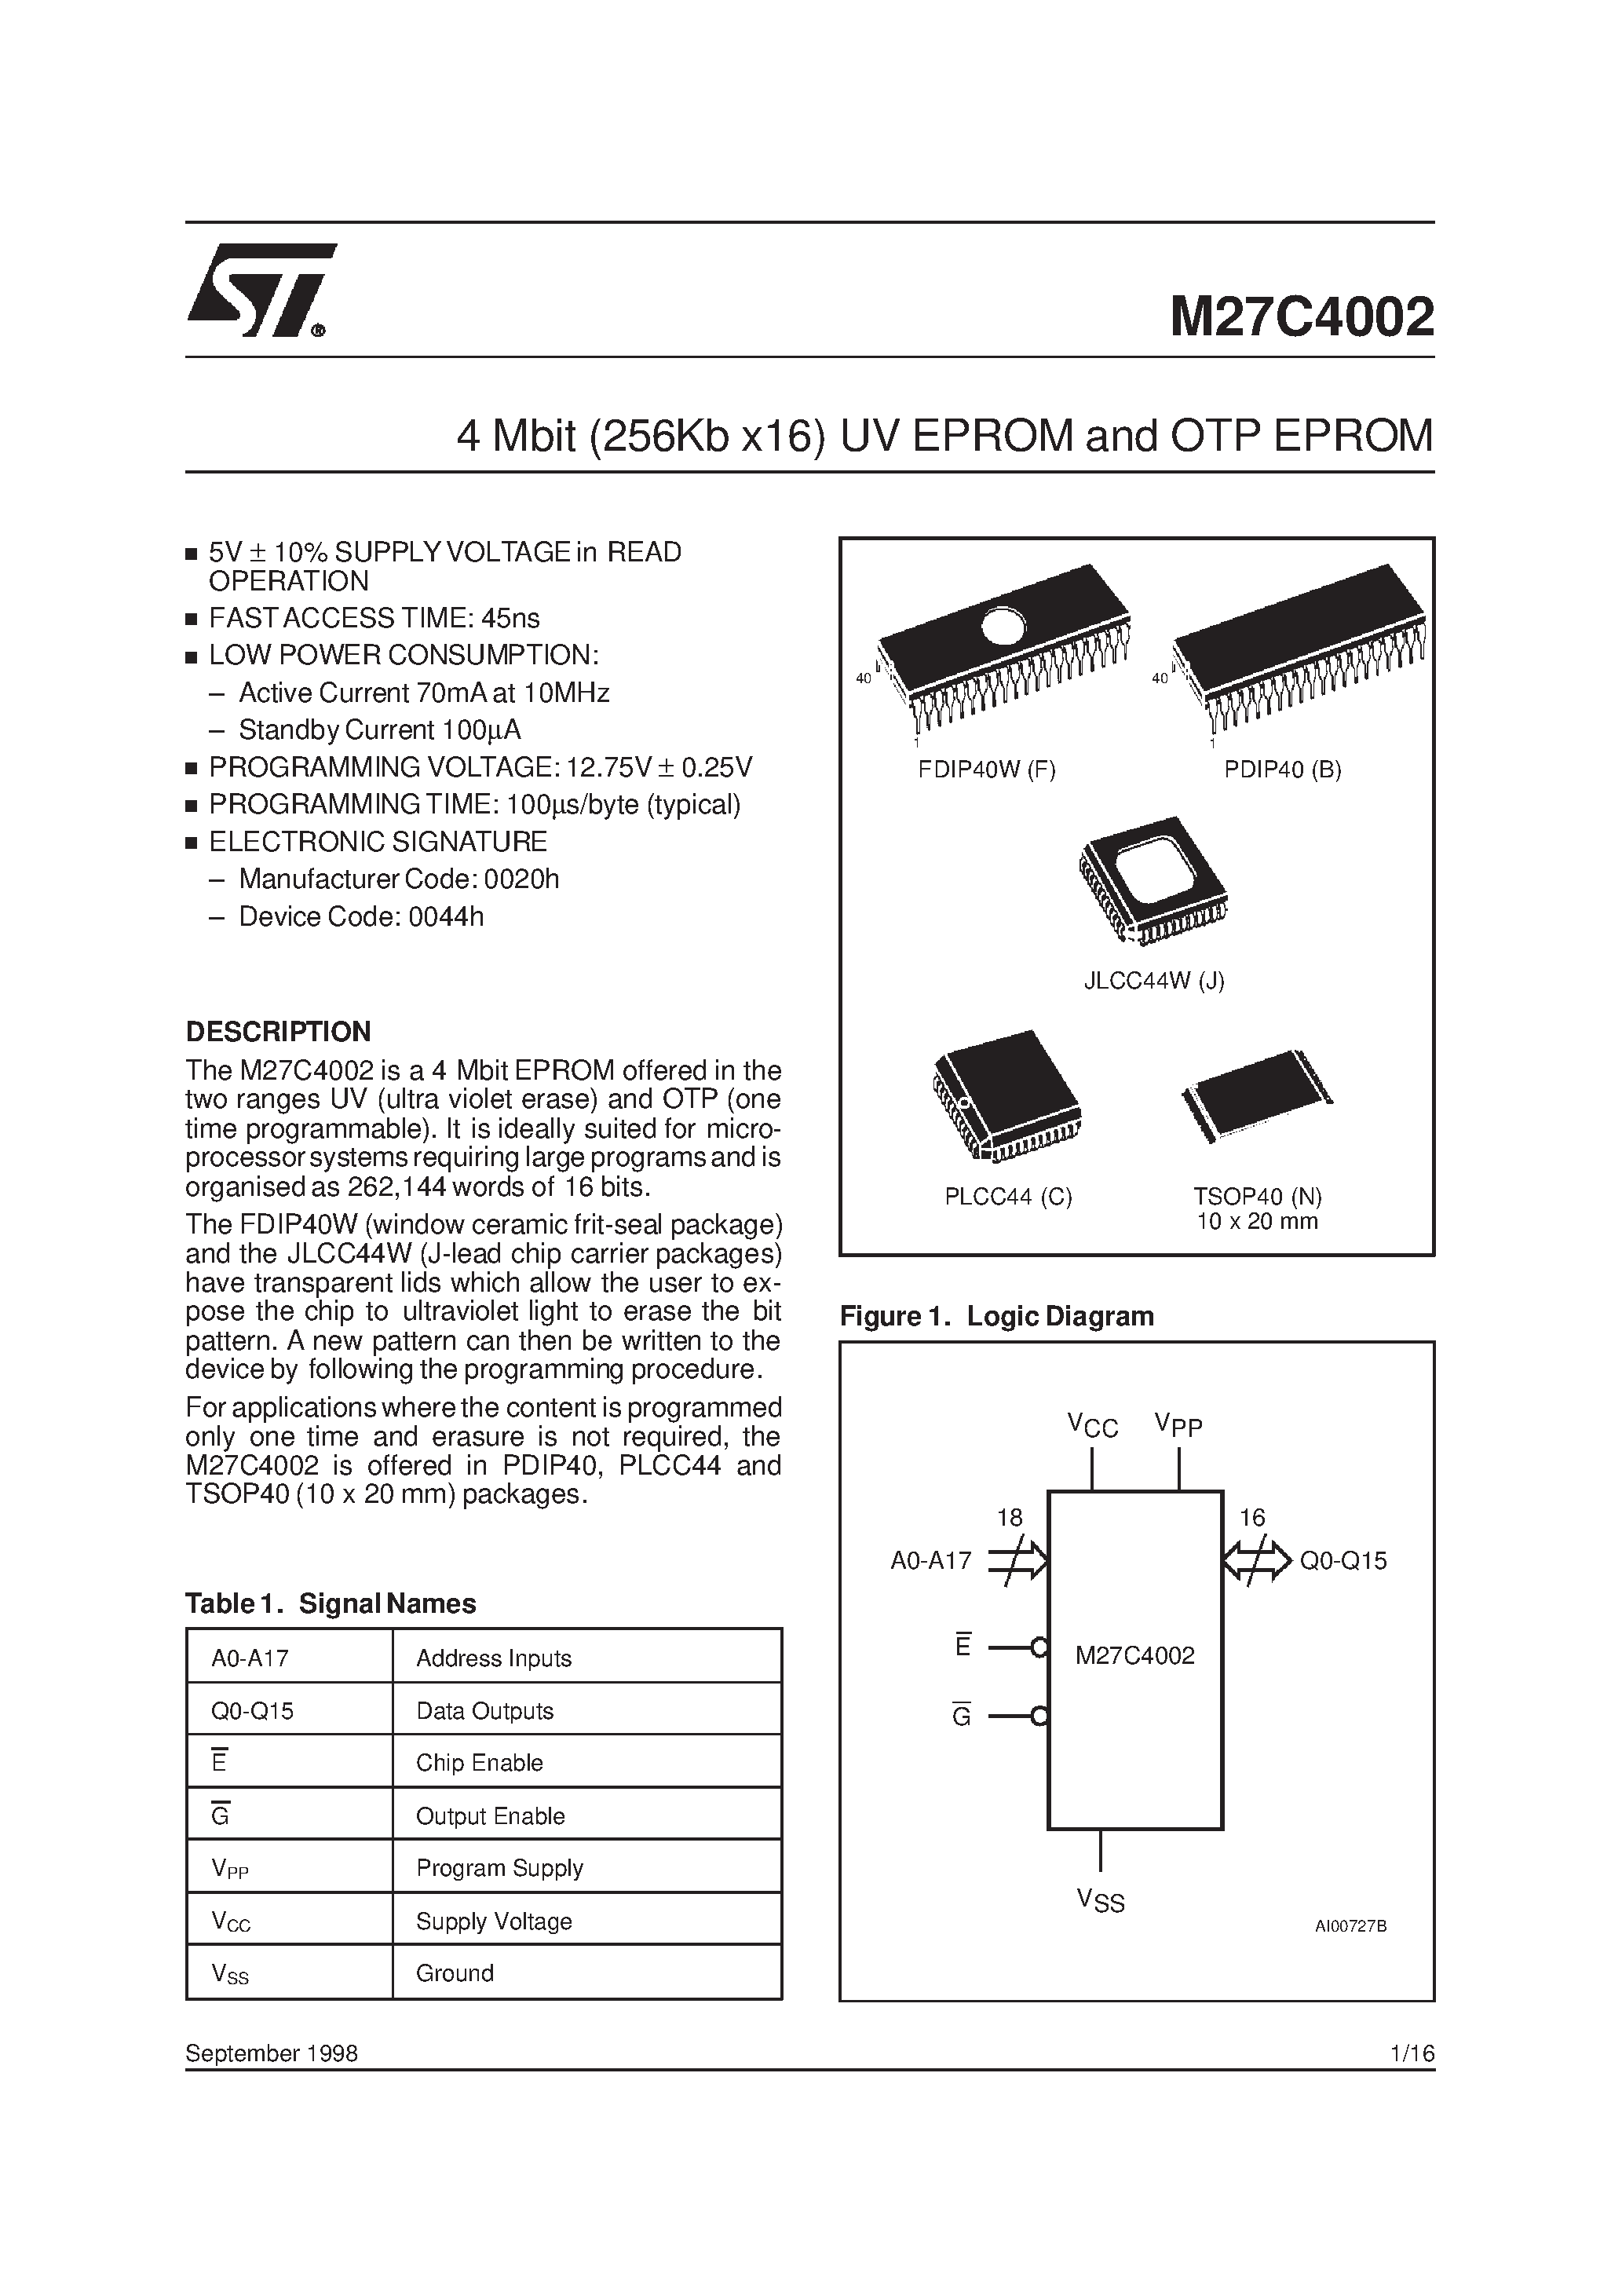 Datasheet M27C4002-10XJ1X - 4 Mbit 256Kb x16 UV EPROM and OTP EPROM page 1